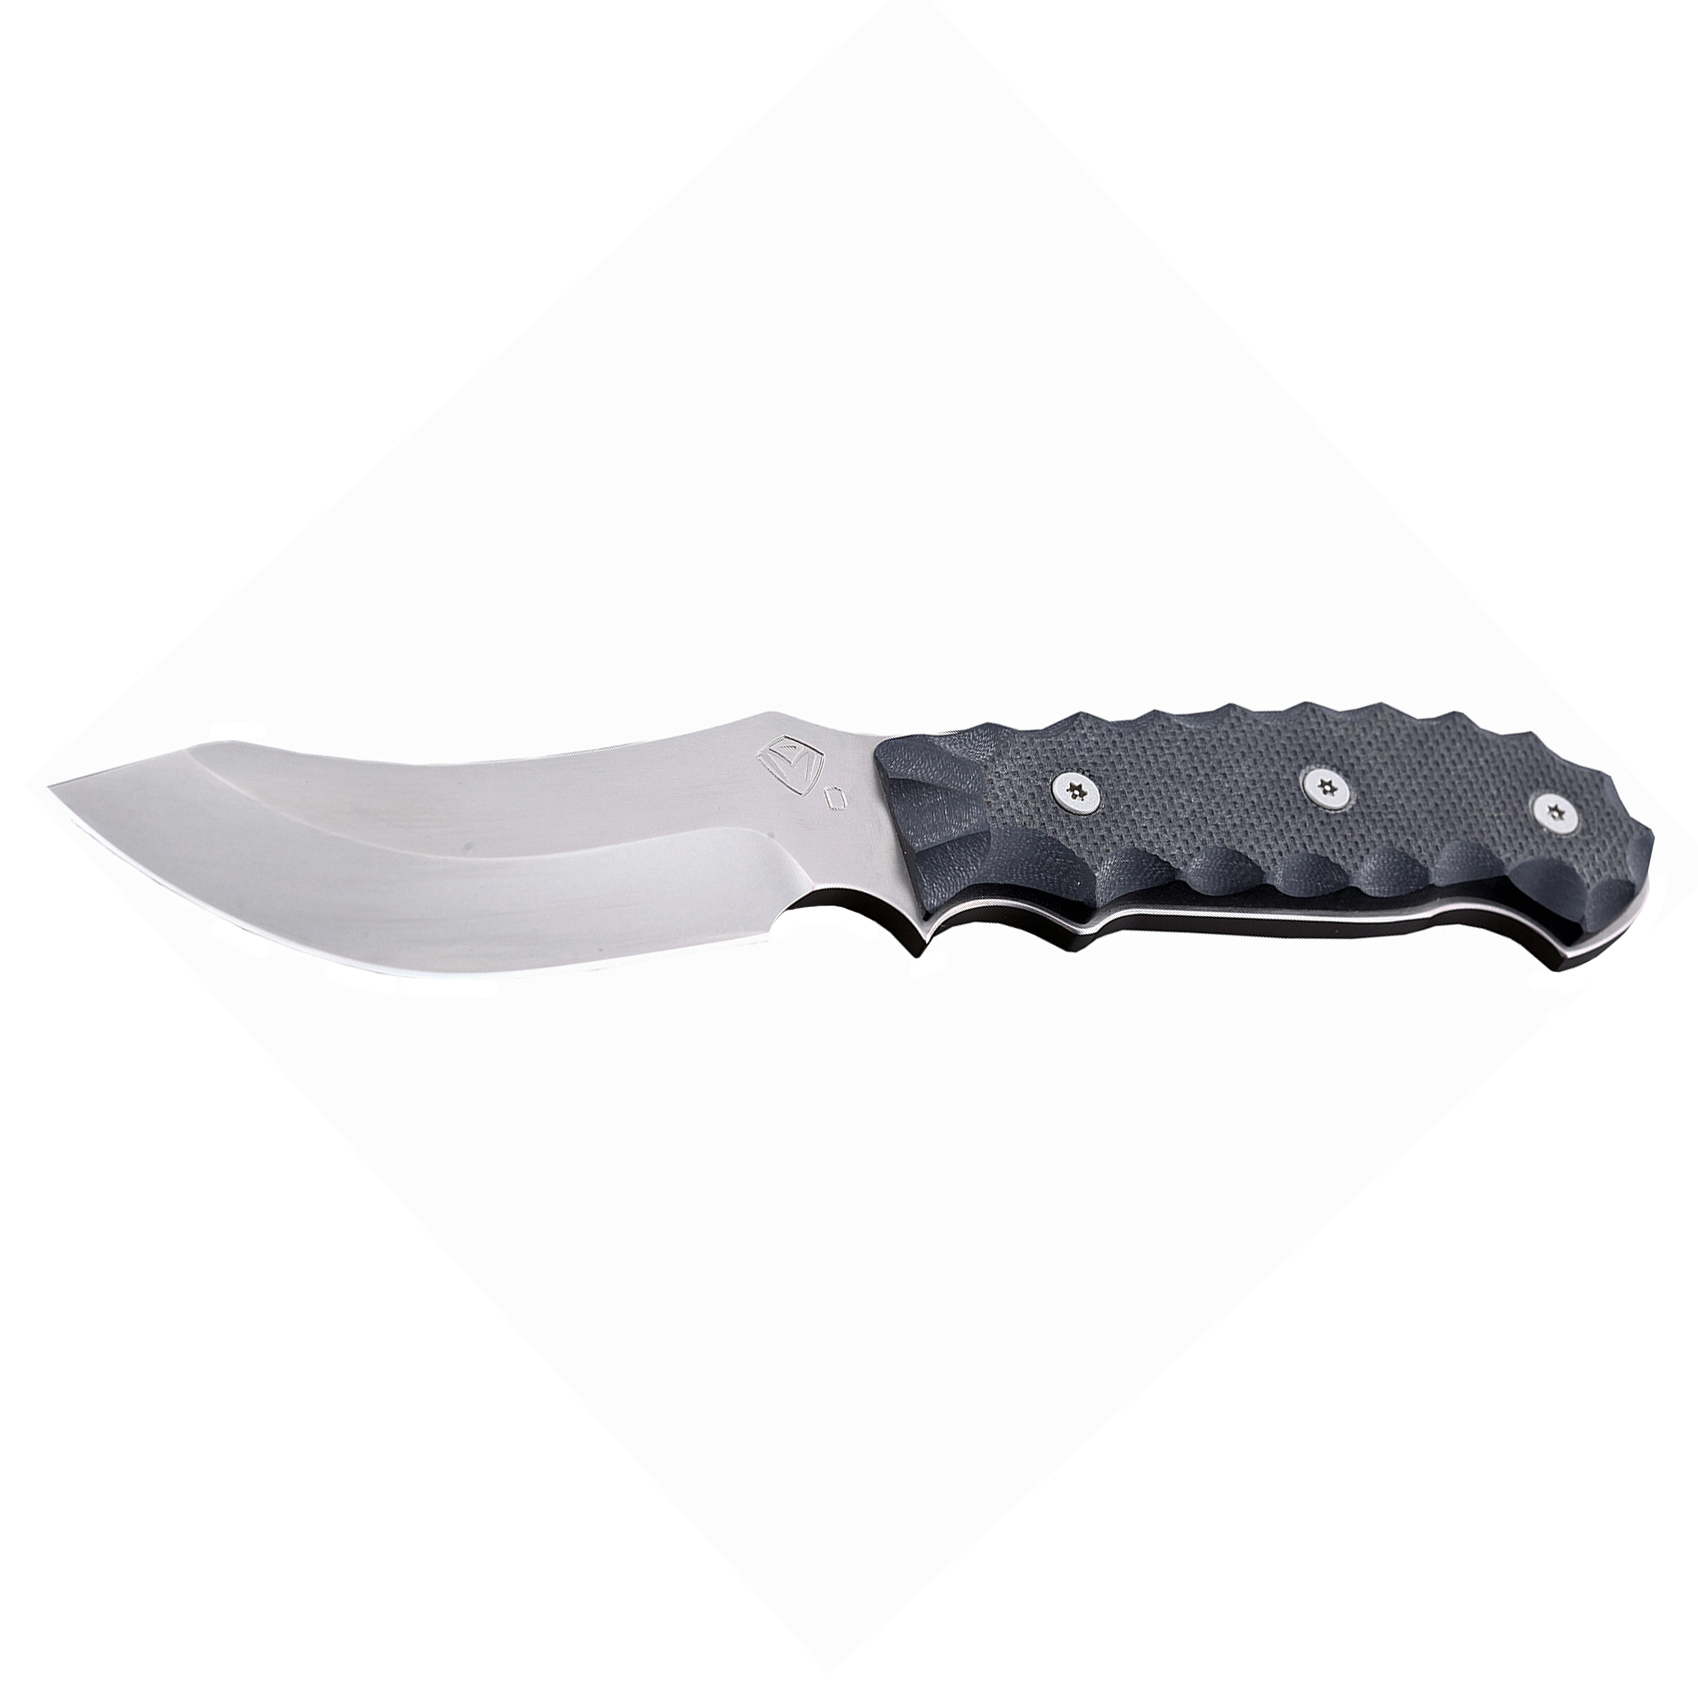 Нож шкуросъемный с фиксированным клинком Medford Elk Skinner, сталь D2, рукоять стеклотекстолит G-10 от Ножиков